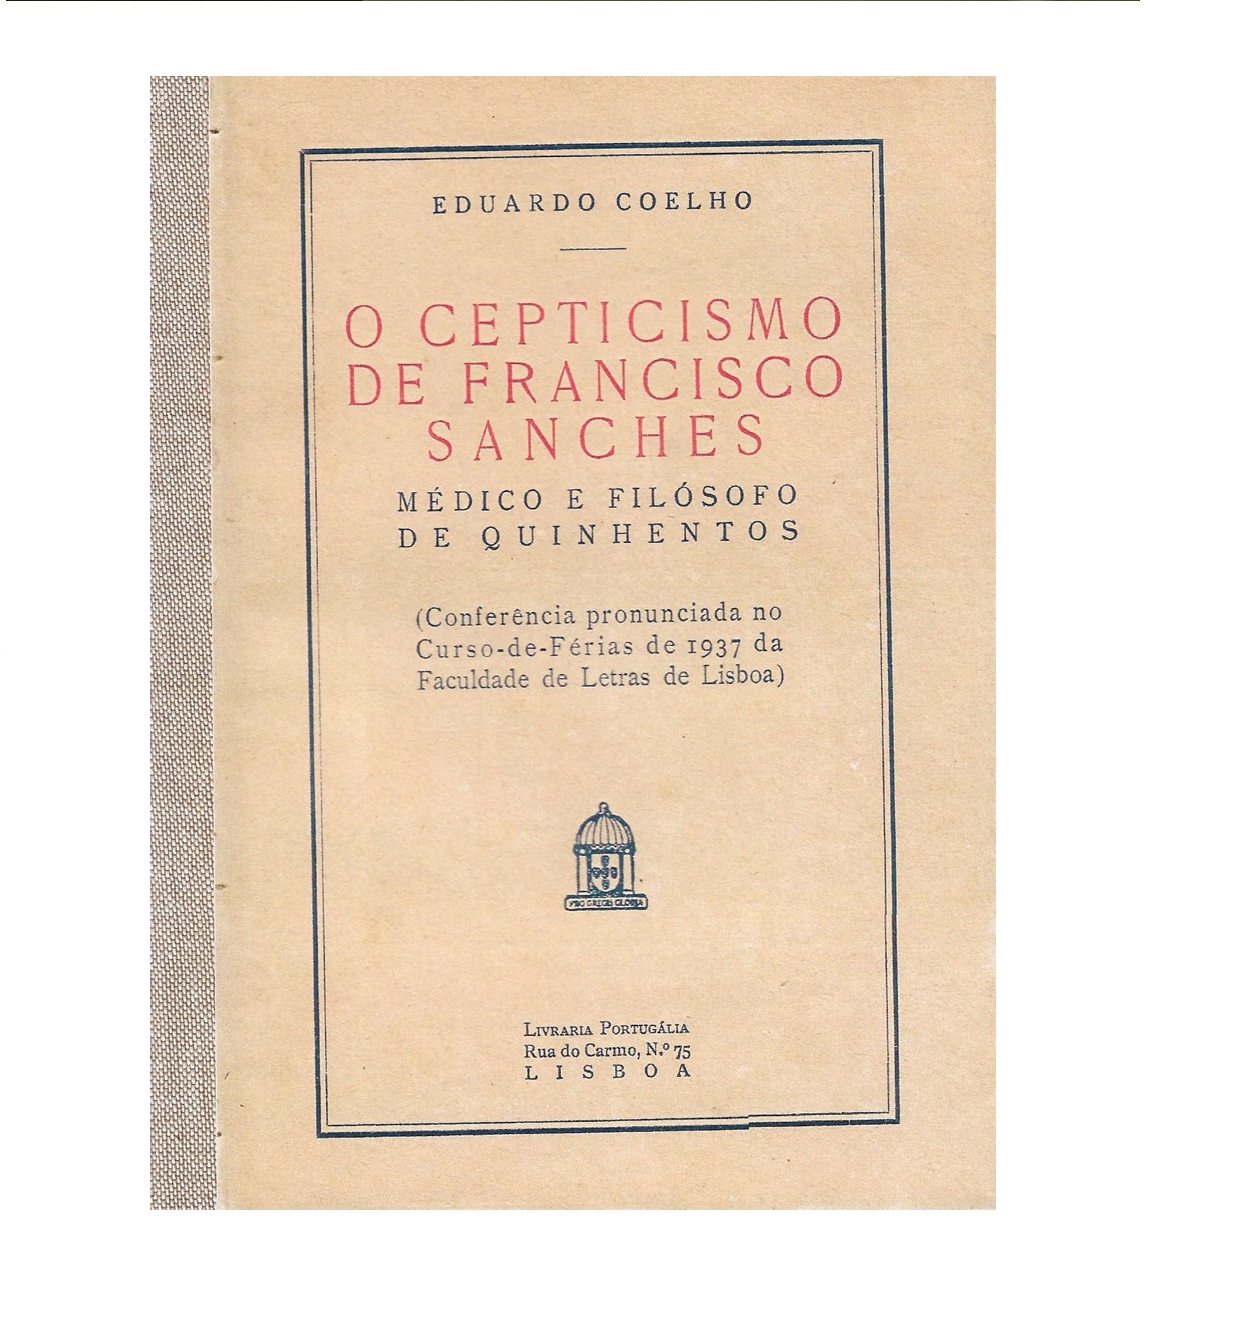 O Cepticismo de Francisco  Sanches: médico e filósofo de quinhentos.